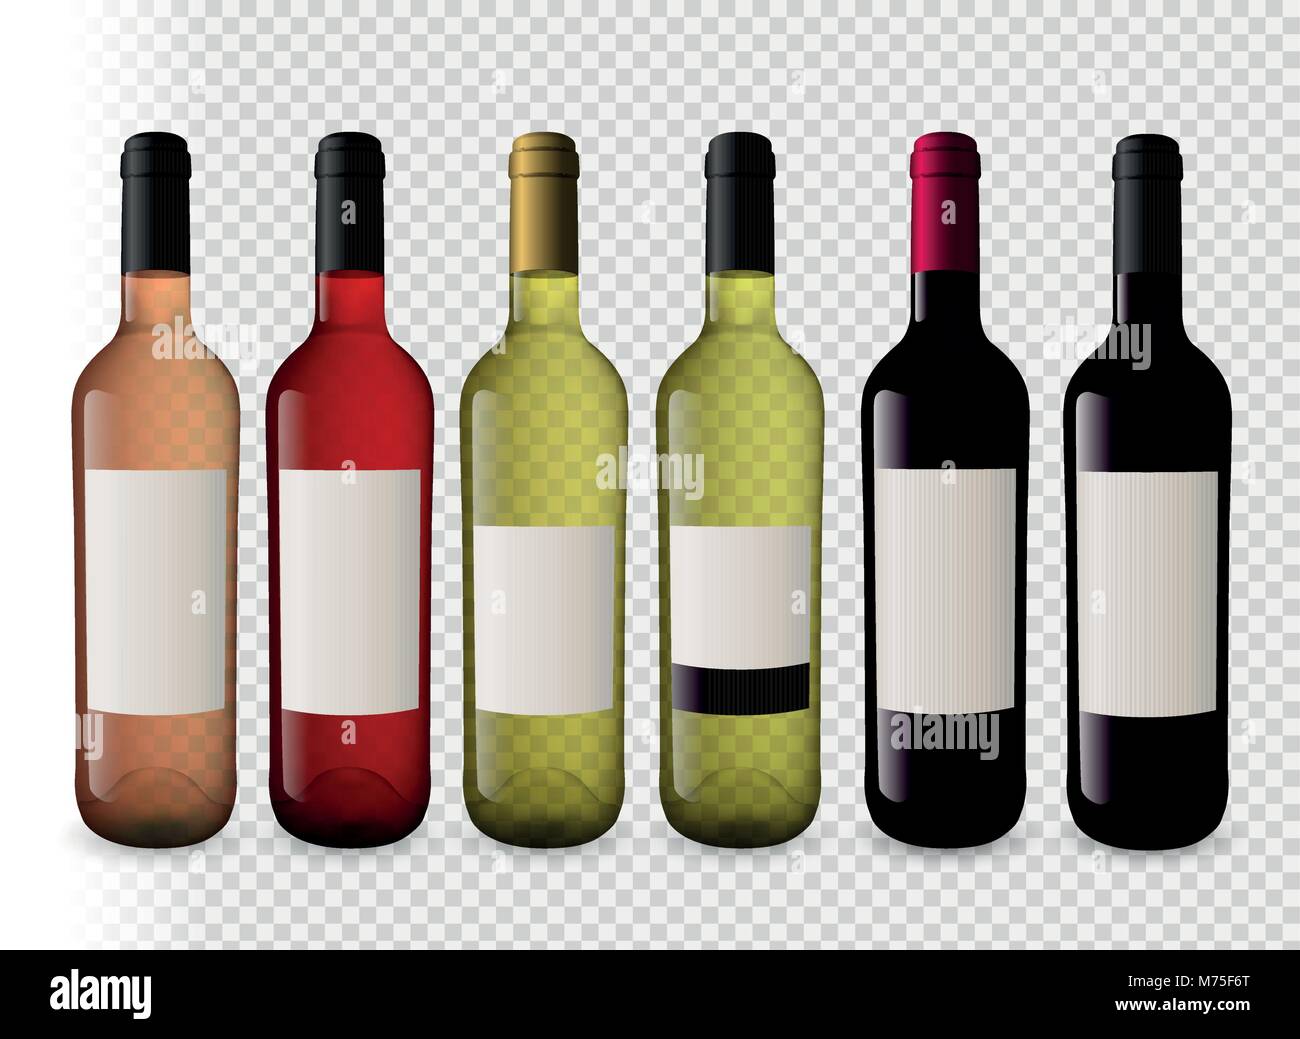 Impostare le illustrazioni delle bottiglie di vino con lo sfondo trasparente. Bottiglie di vino rosso, il vino bianco e il vino rosato. Tappi di diversi colori. Illustrazione Vettoriale